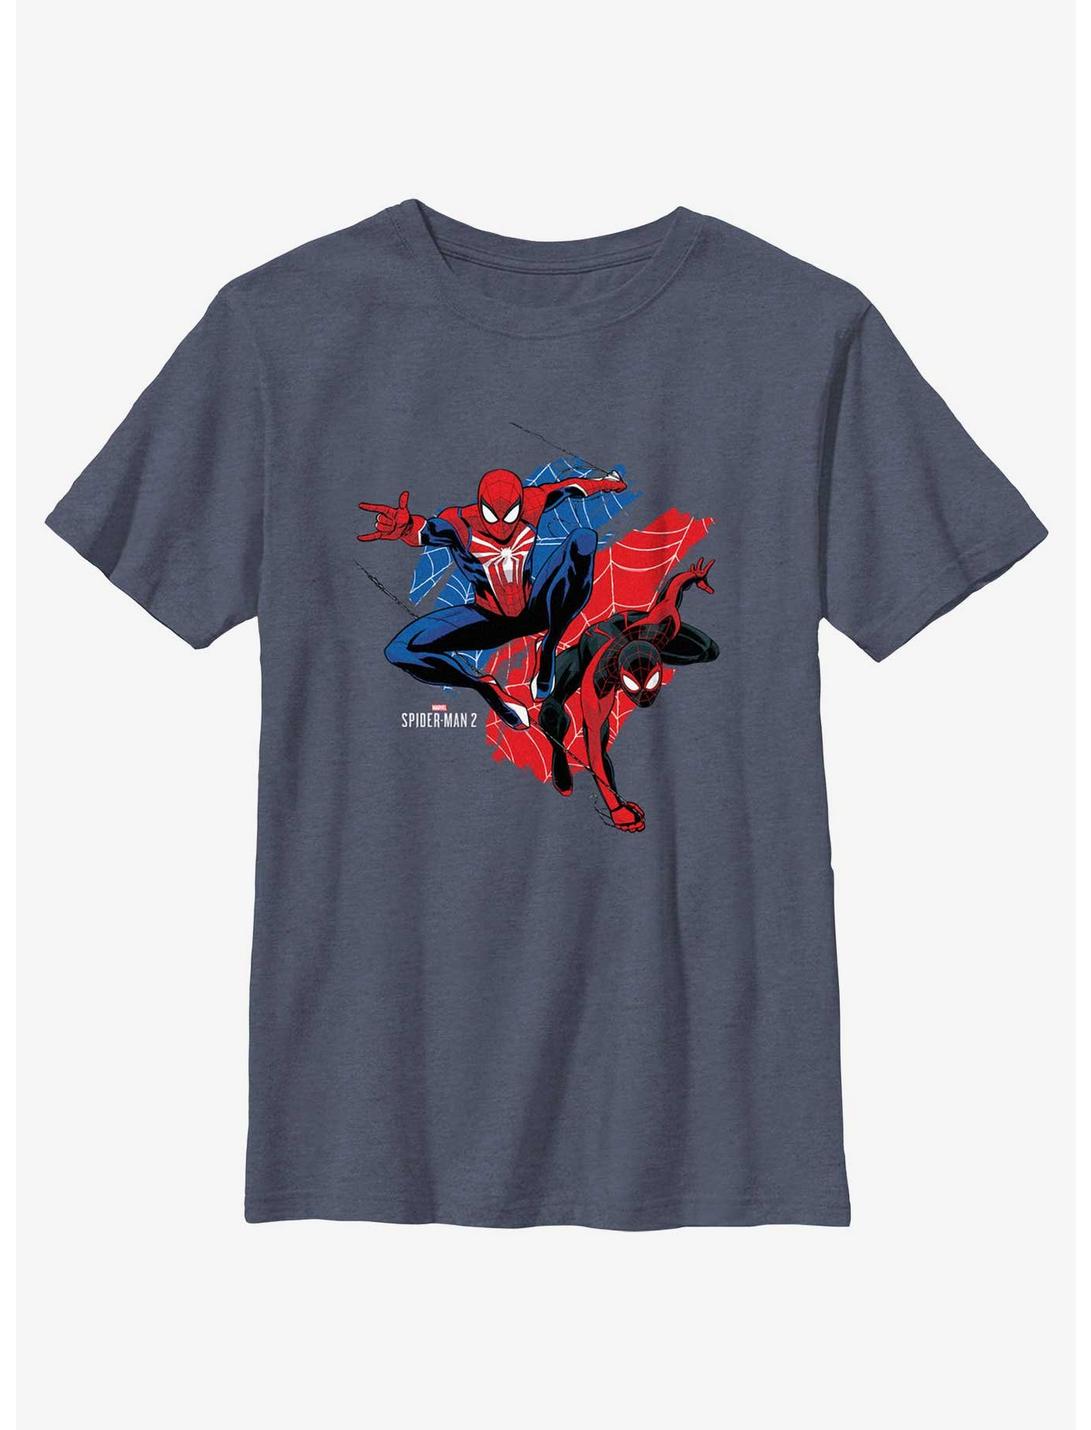 Marvel Spider-Man 2 Game Peter Parker & Miles Morales Youth T-Shirt, NAVY HTR, hi-res